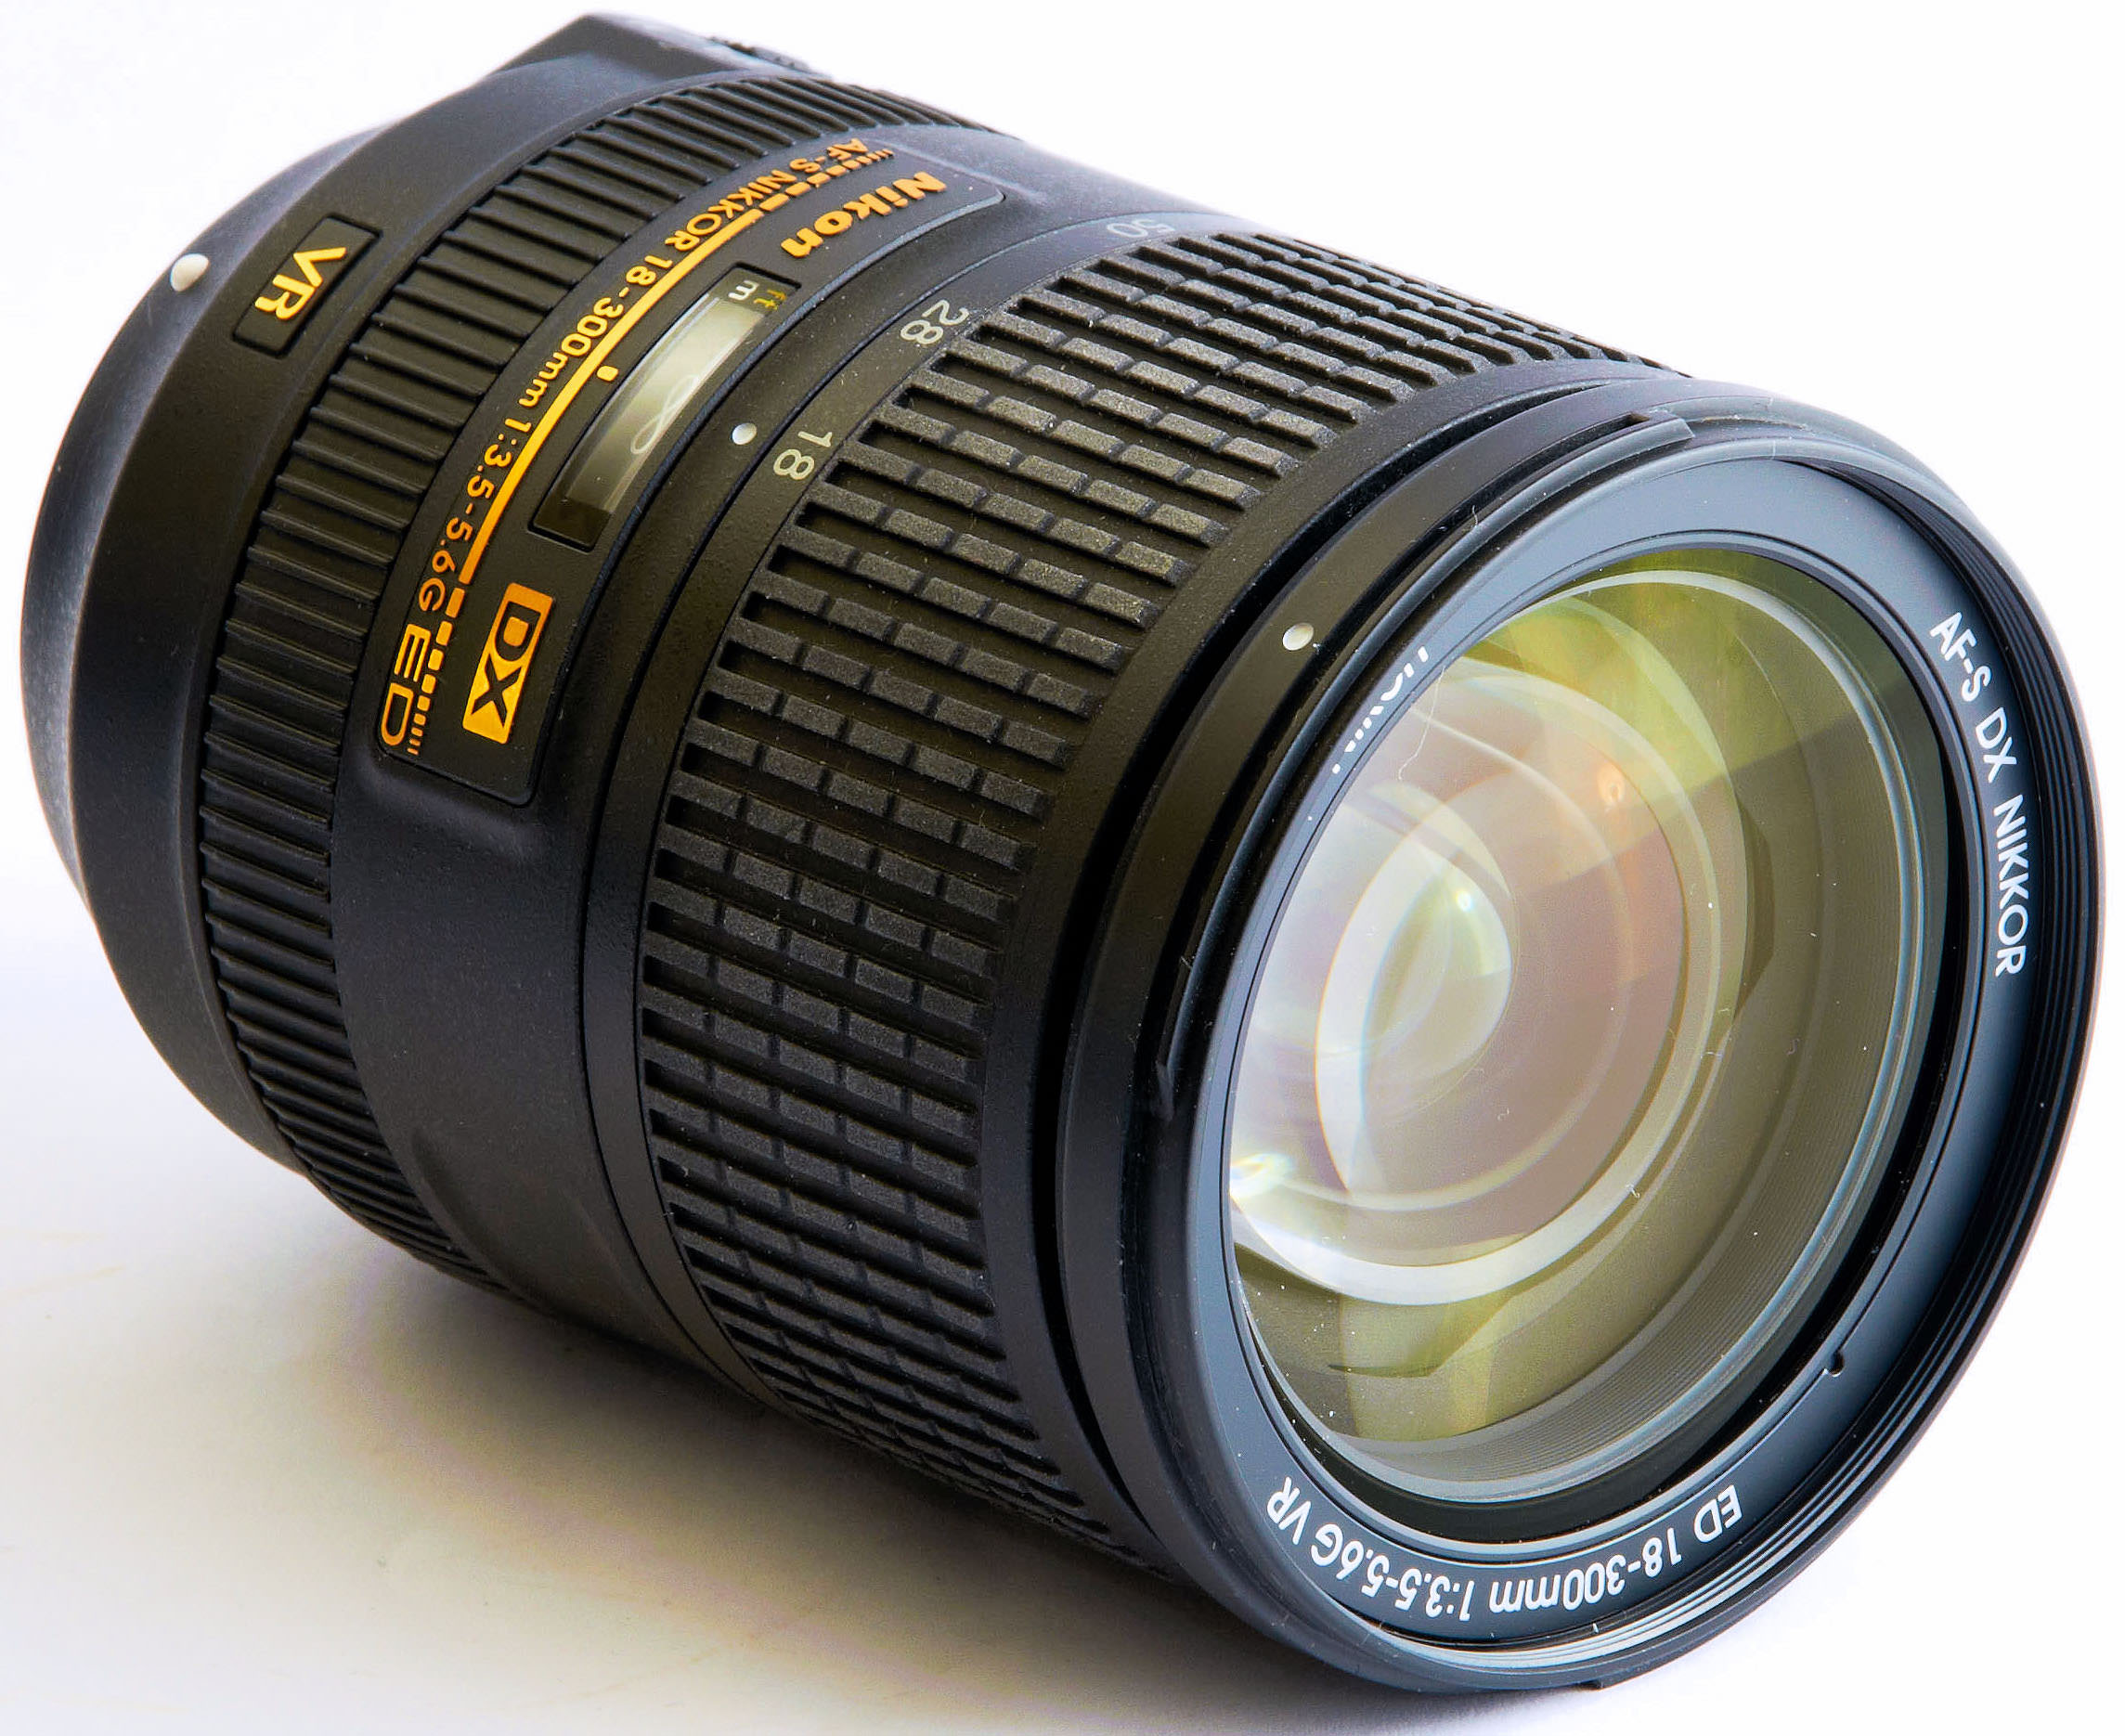 Nikon AF-S DX Nikkor 18-300mm F3.5-5.6G ED VR